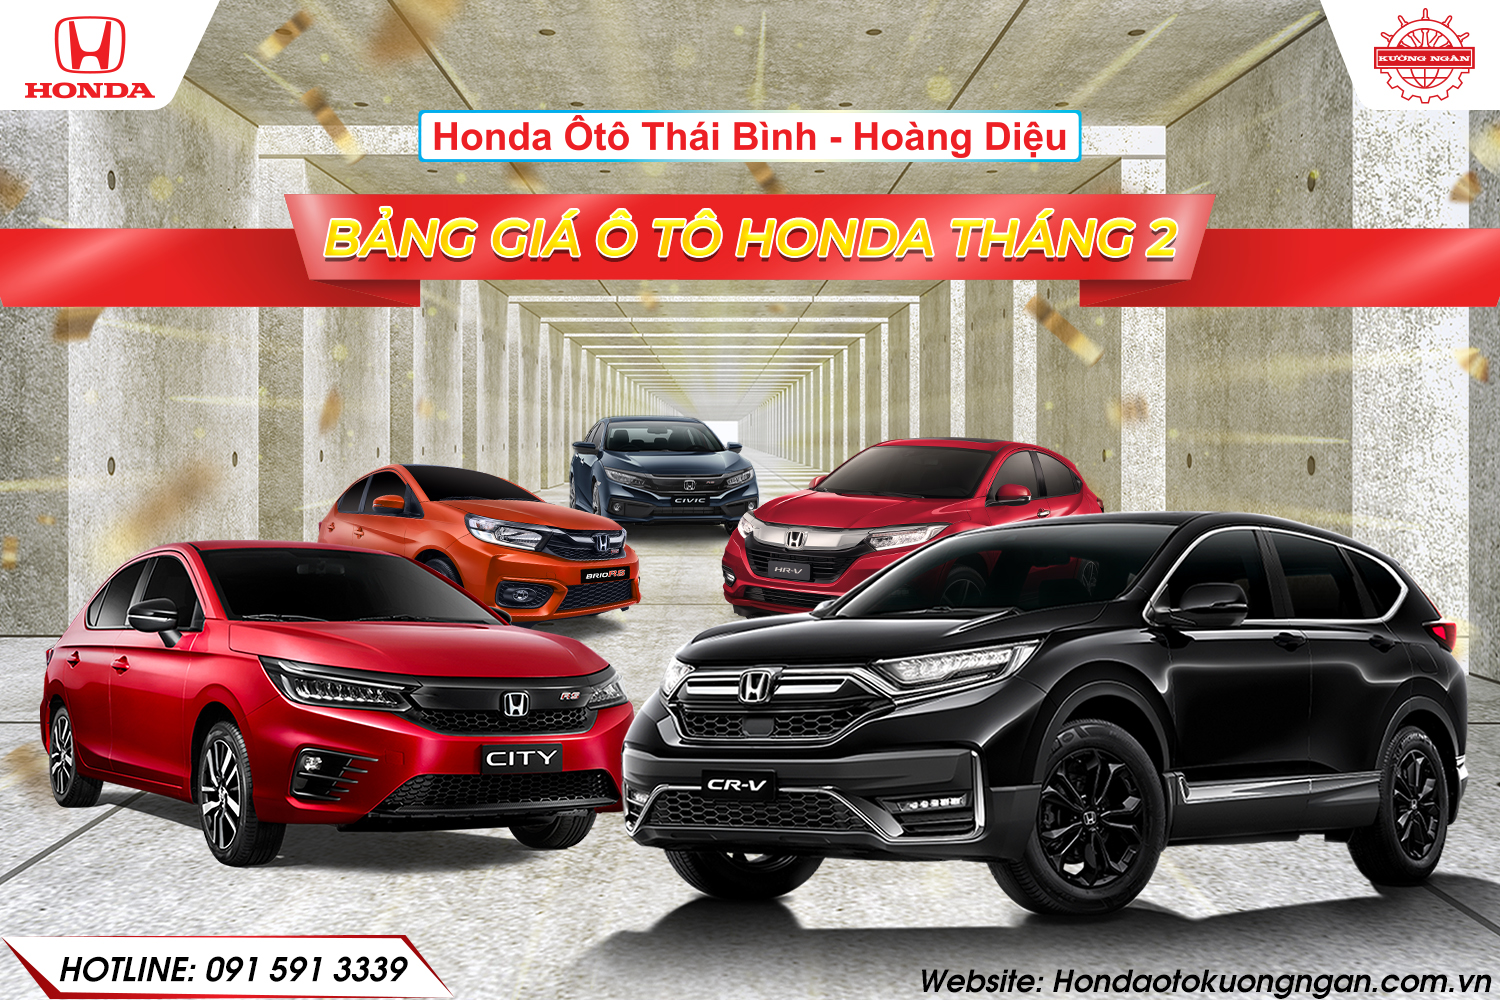 Bảng giá xe chào năm mới tại Honda Ôtô Thái Bình - Hoàng Diệu